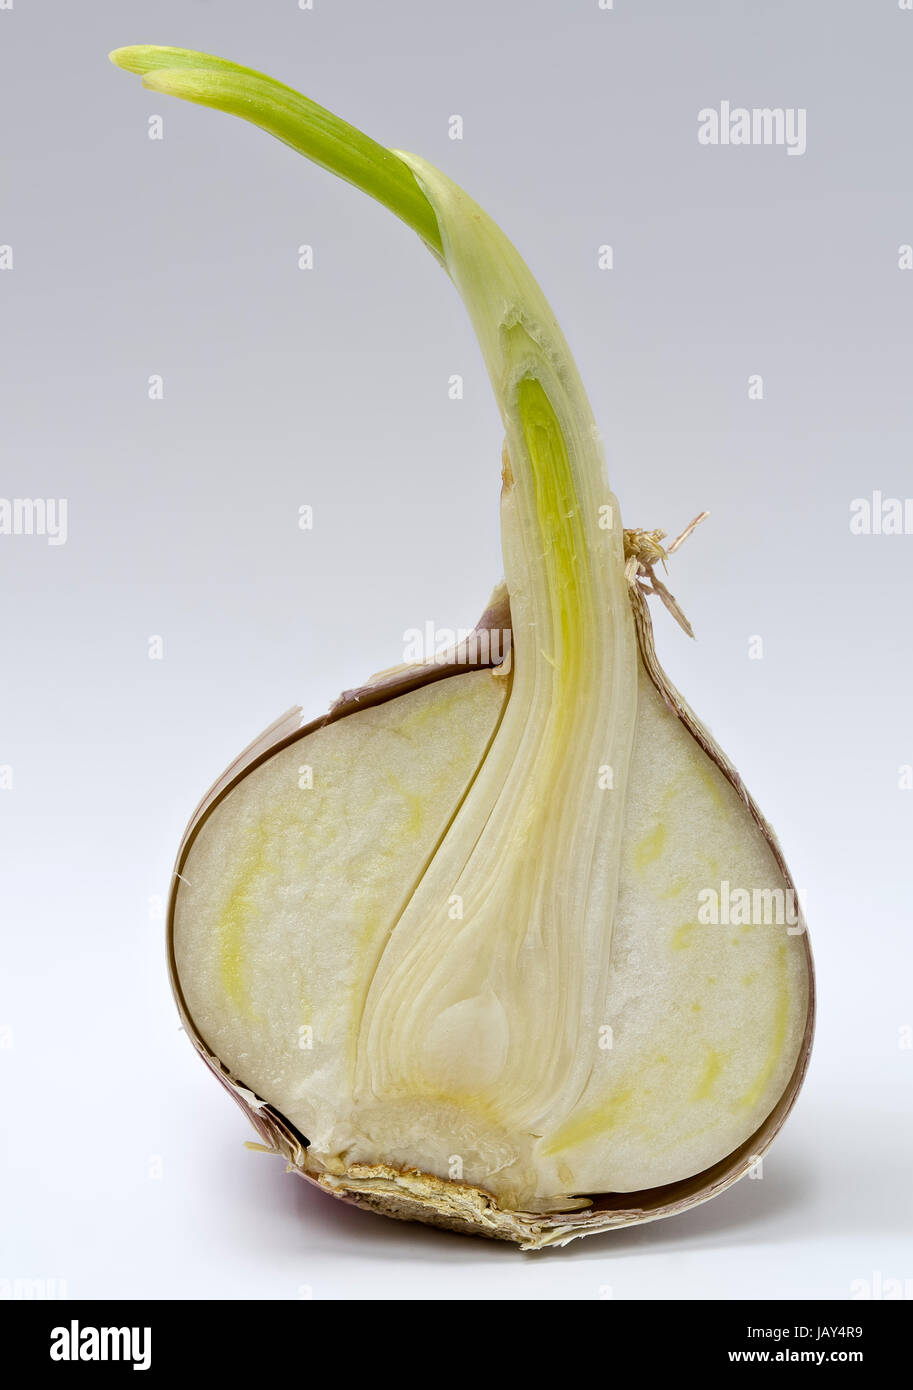 Schnittfläche eines gekeimten chinesischen Knoblauchs; cut surface of a germed chinese garlic Stock Photo